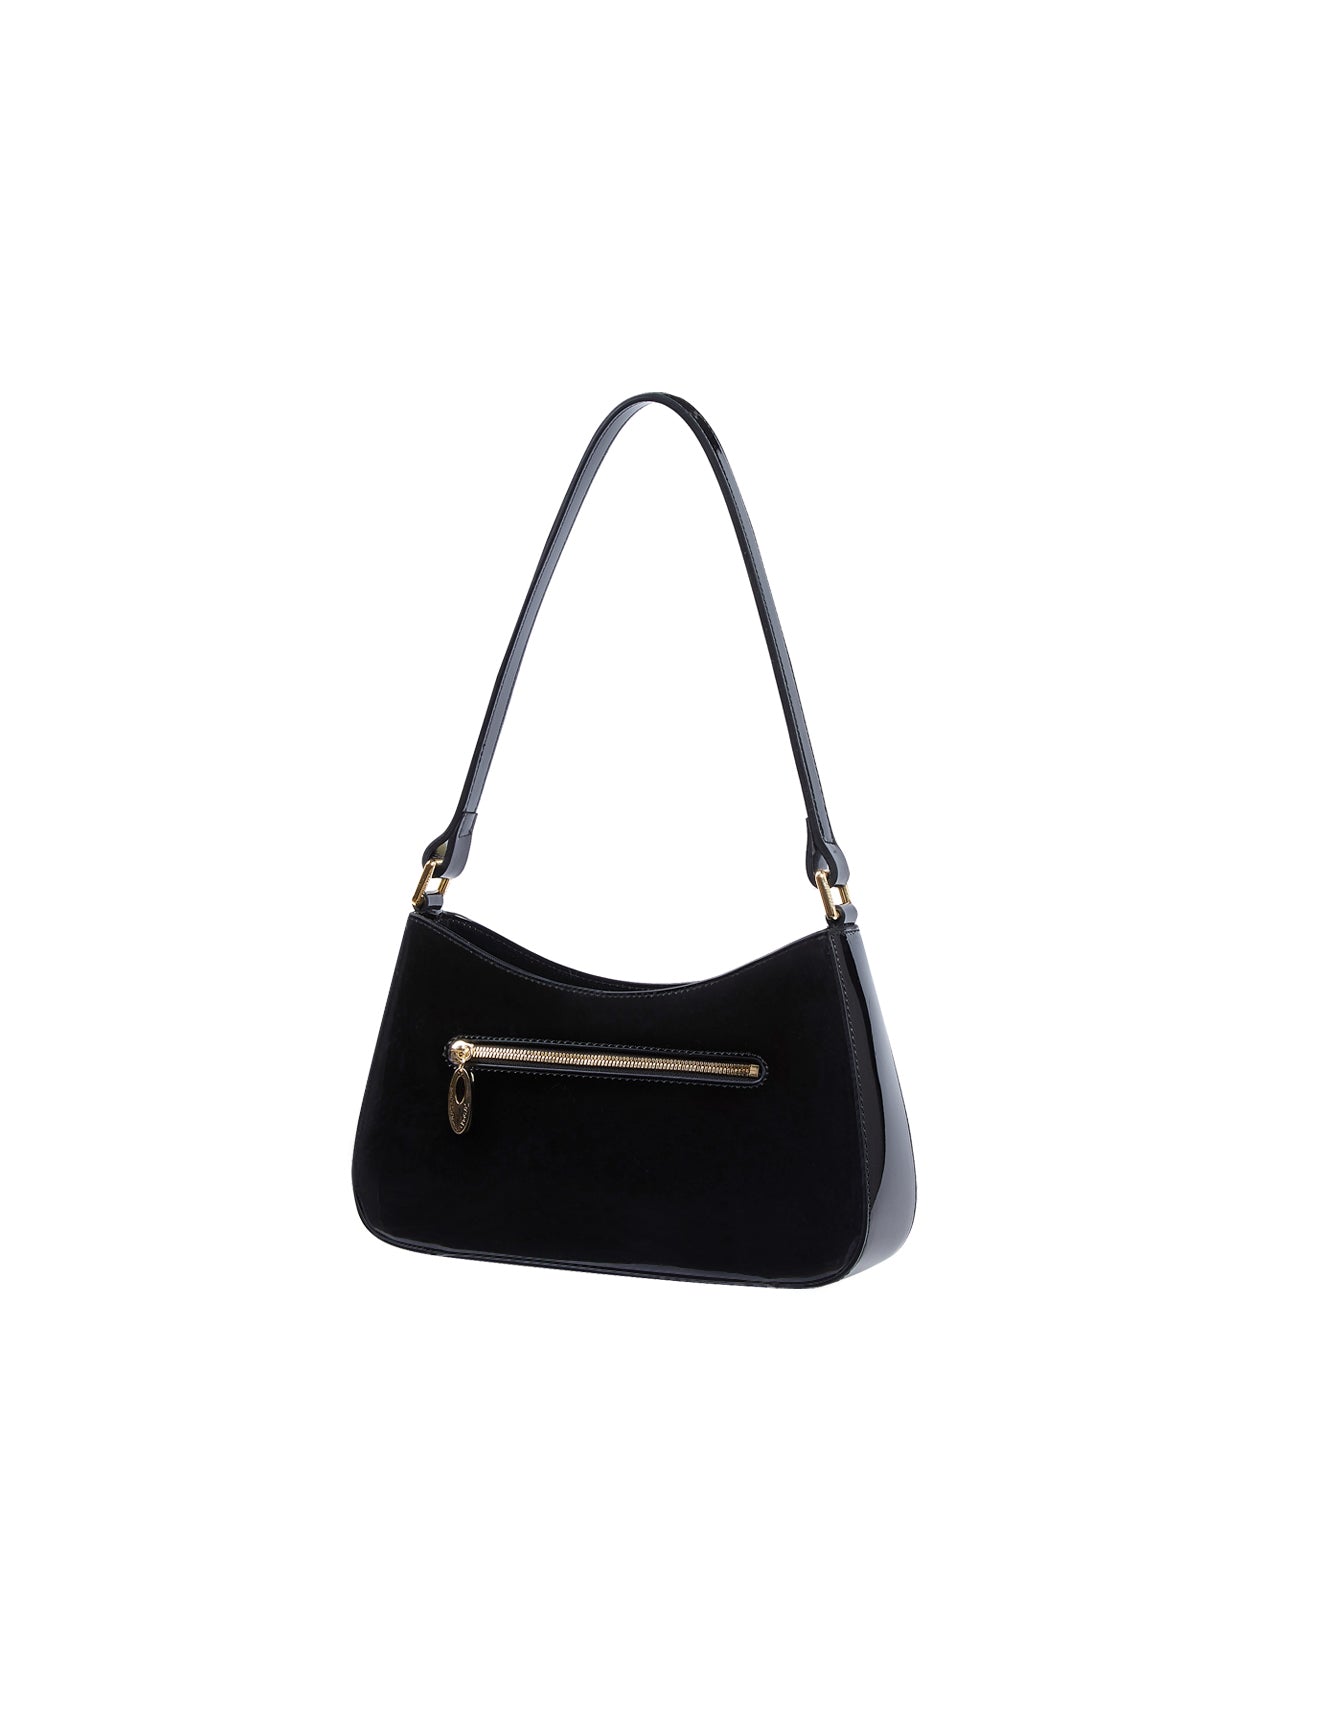 Serenade - Allura SV1-0821 Patent Leather Handbag - Black-4